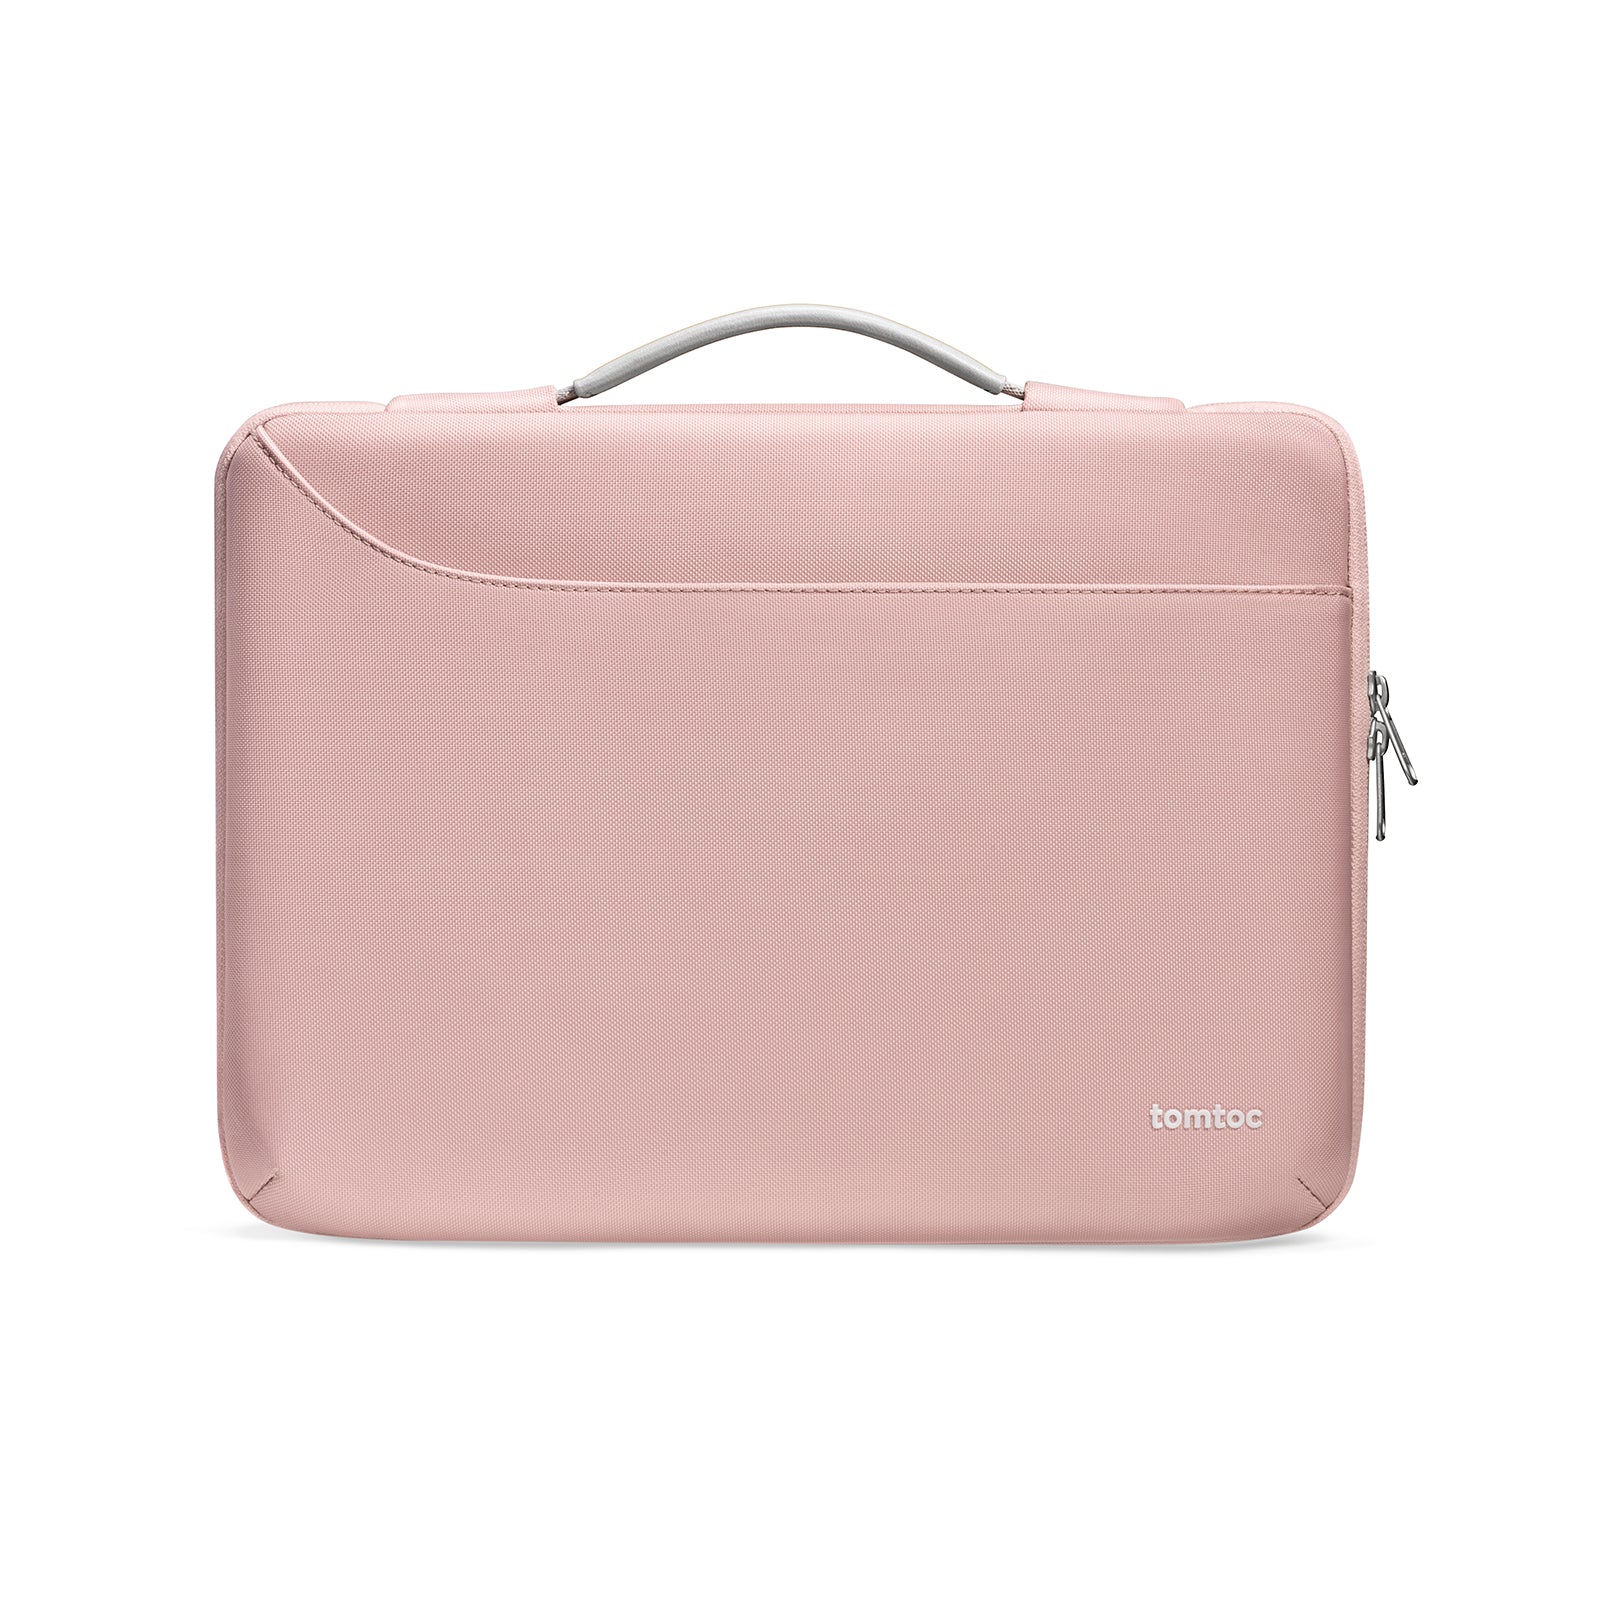 Tomtoc Defender-A22 Laptop Handbag 16 inch - Pink